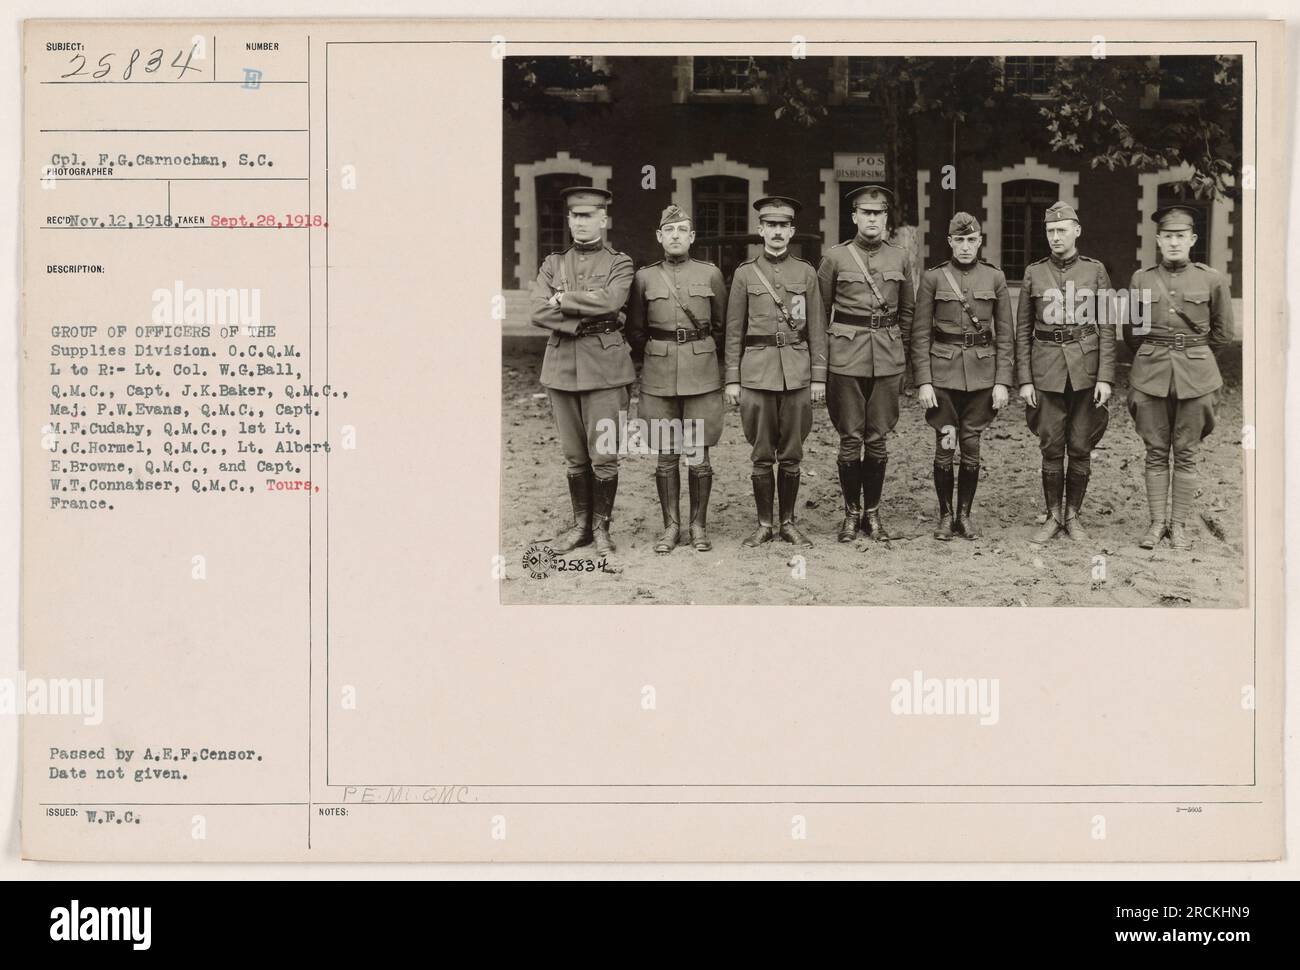 Gruppo di ufficiali della Divisione forniture. Da sinistra a destra: Tenente colonnello W.G.Ball, capitano J.K.Baker, Mej. P.W.Evans, Capt. M.P. Cudahy, 1st Lt. J.C.Hormel, LT. Albert E.Browne, e Capt. W.T. Connatser. Preso a Toura, in Francia. Data non specificata. Superato da A.E.F.Censor. Fotografia etichettata 25834 POS SBURSING. Foto Stock